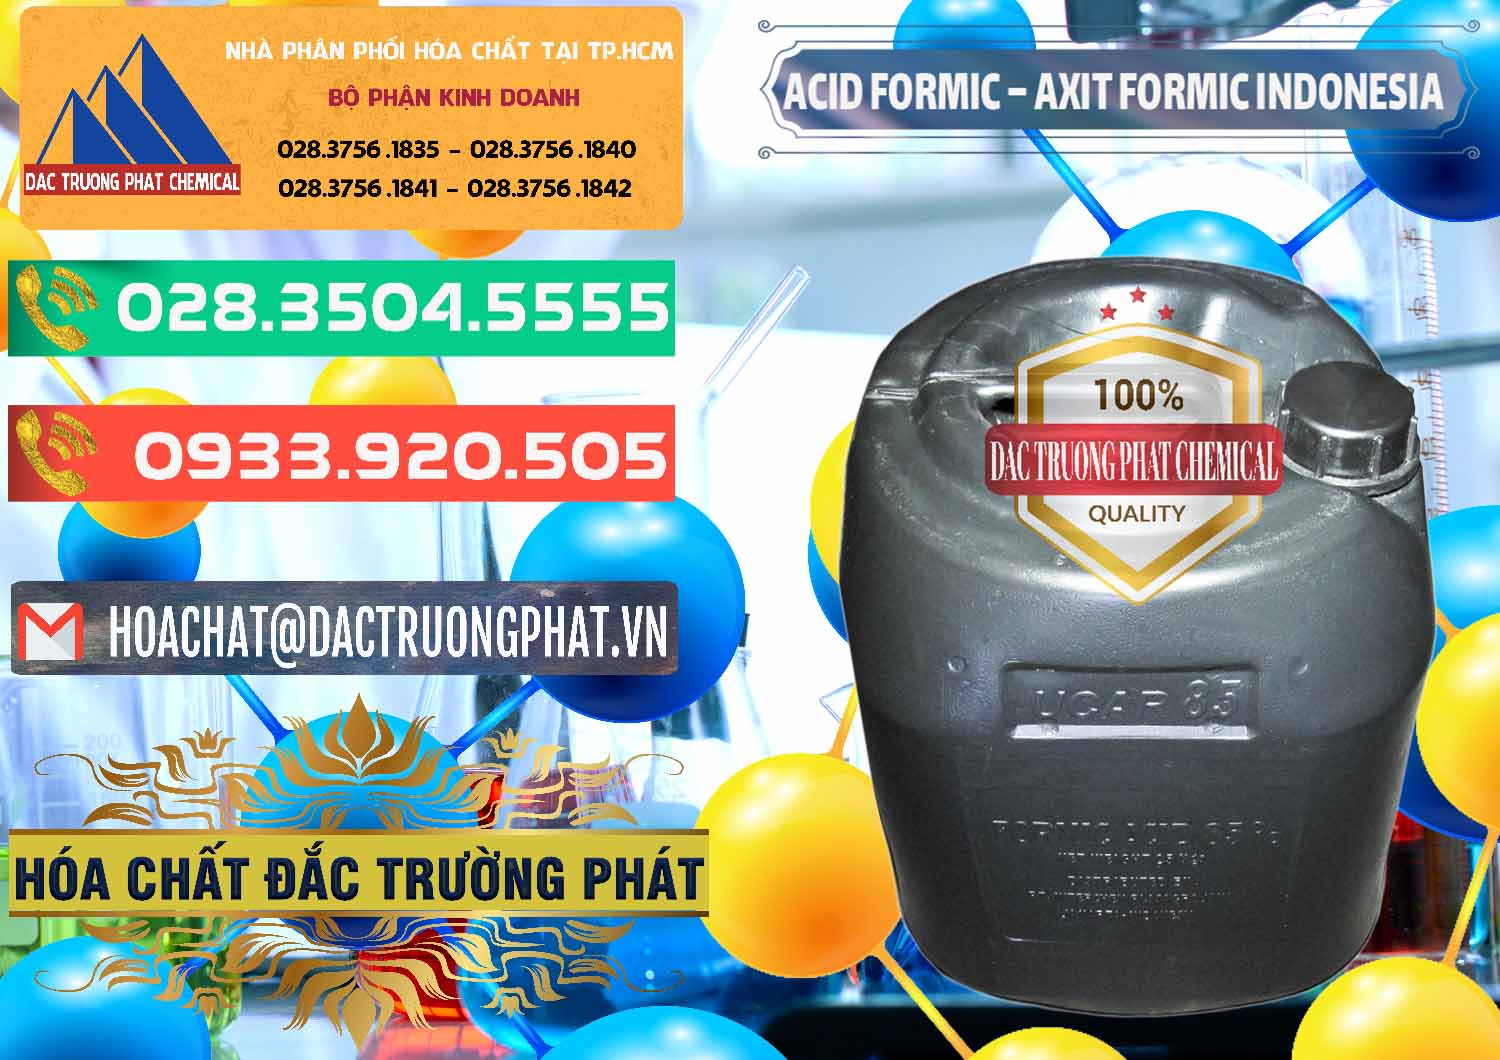 Cty chuyên bán & cung ứng Acid Formic - Axit Formic Indonesia - 0026 - Công ty nhập khẩu - cung cấp hóa chất tại TP.HCM - congtyhoachat.com.vn